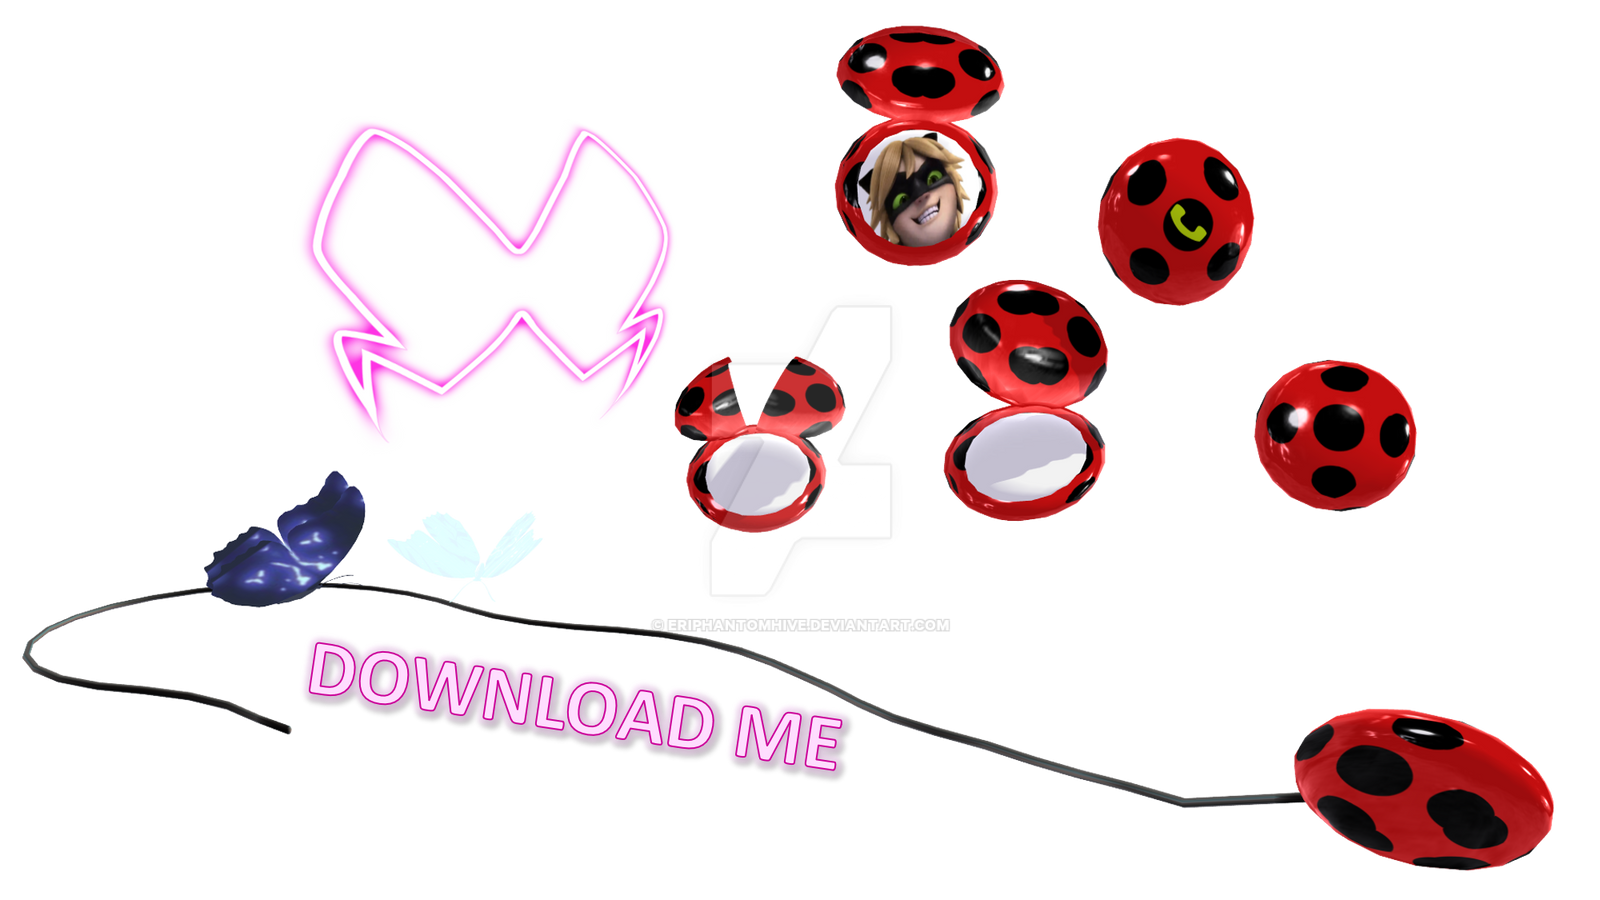 Ladybug PNG Transparent Images Download - PNG Packs